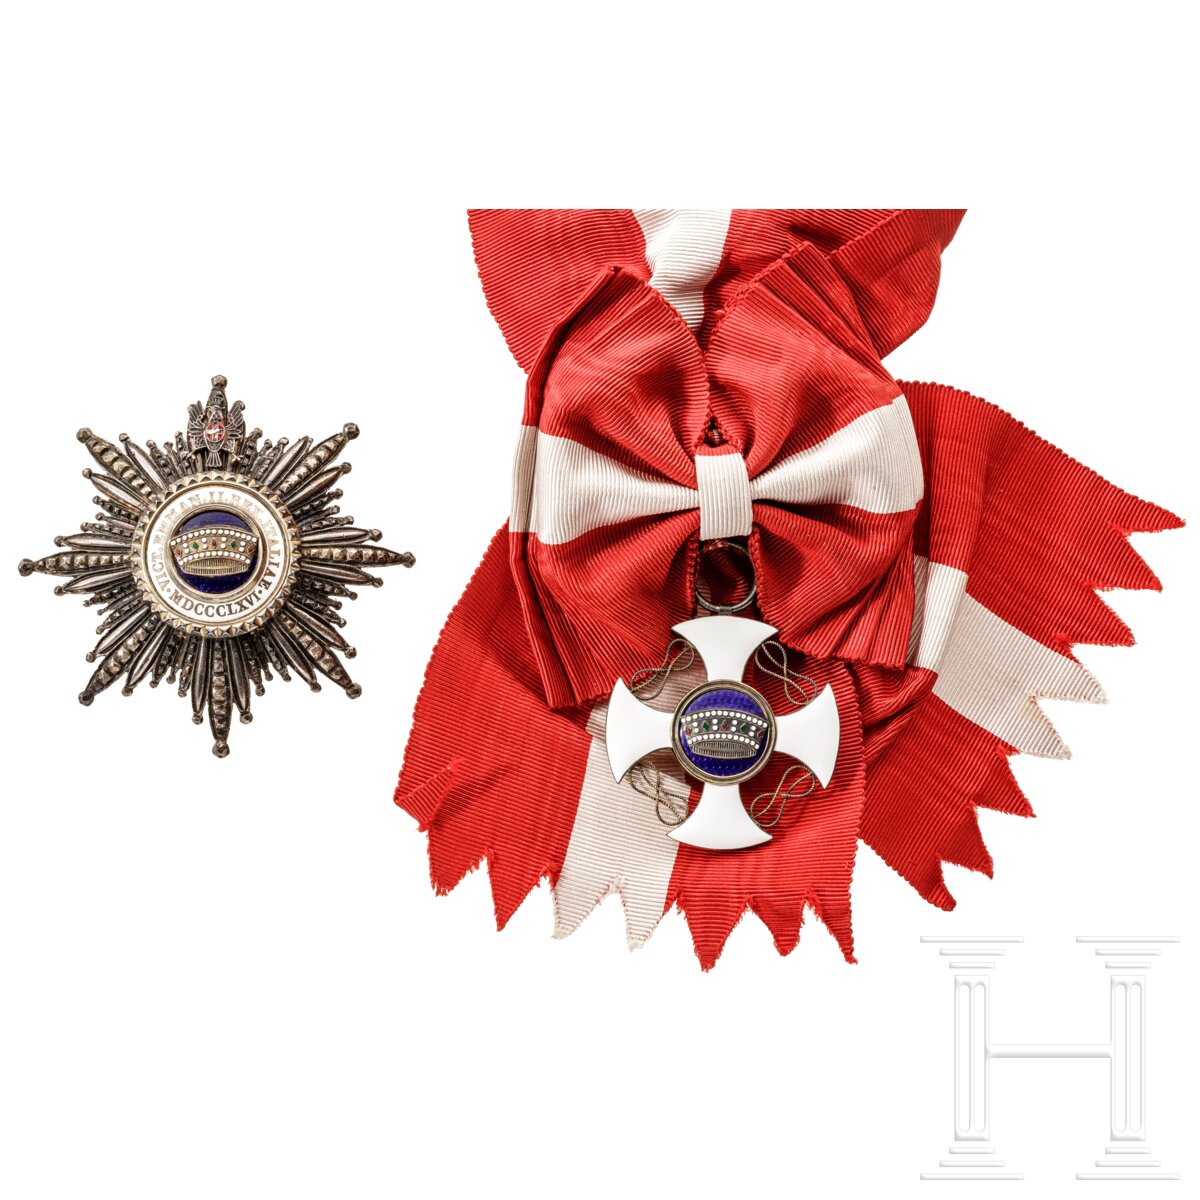 Großkreuzsatz des Ordens der Krone von Italien - Image 2 of 5